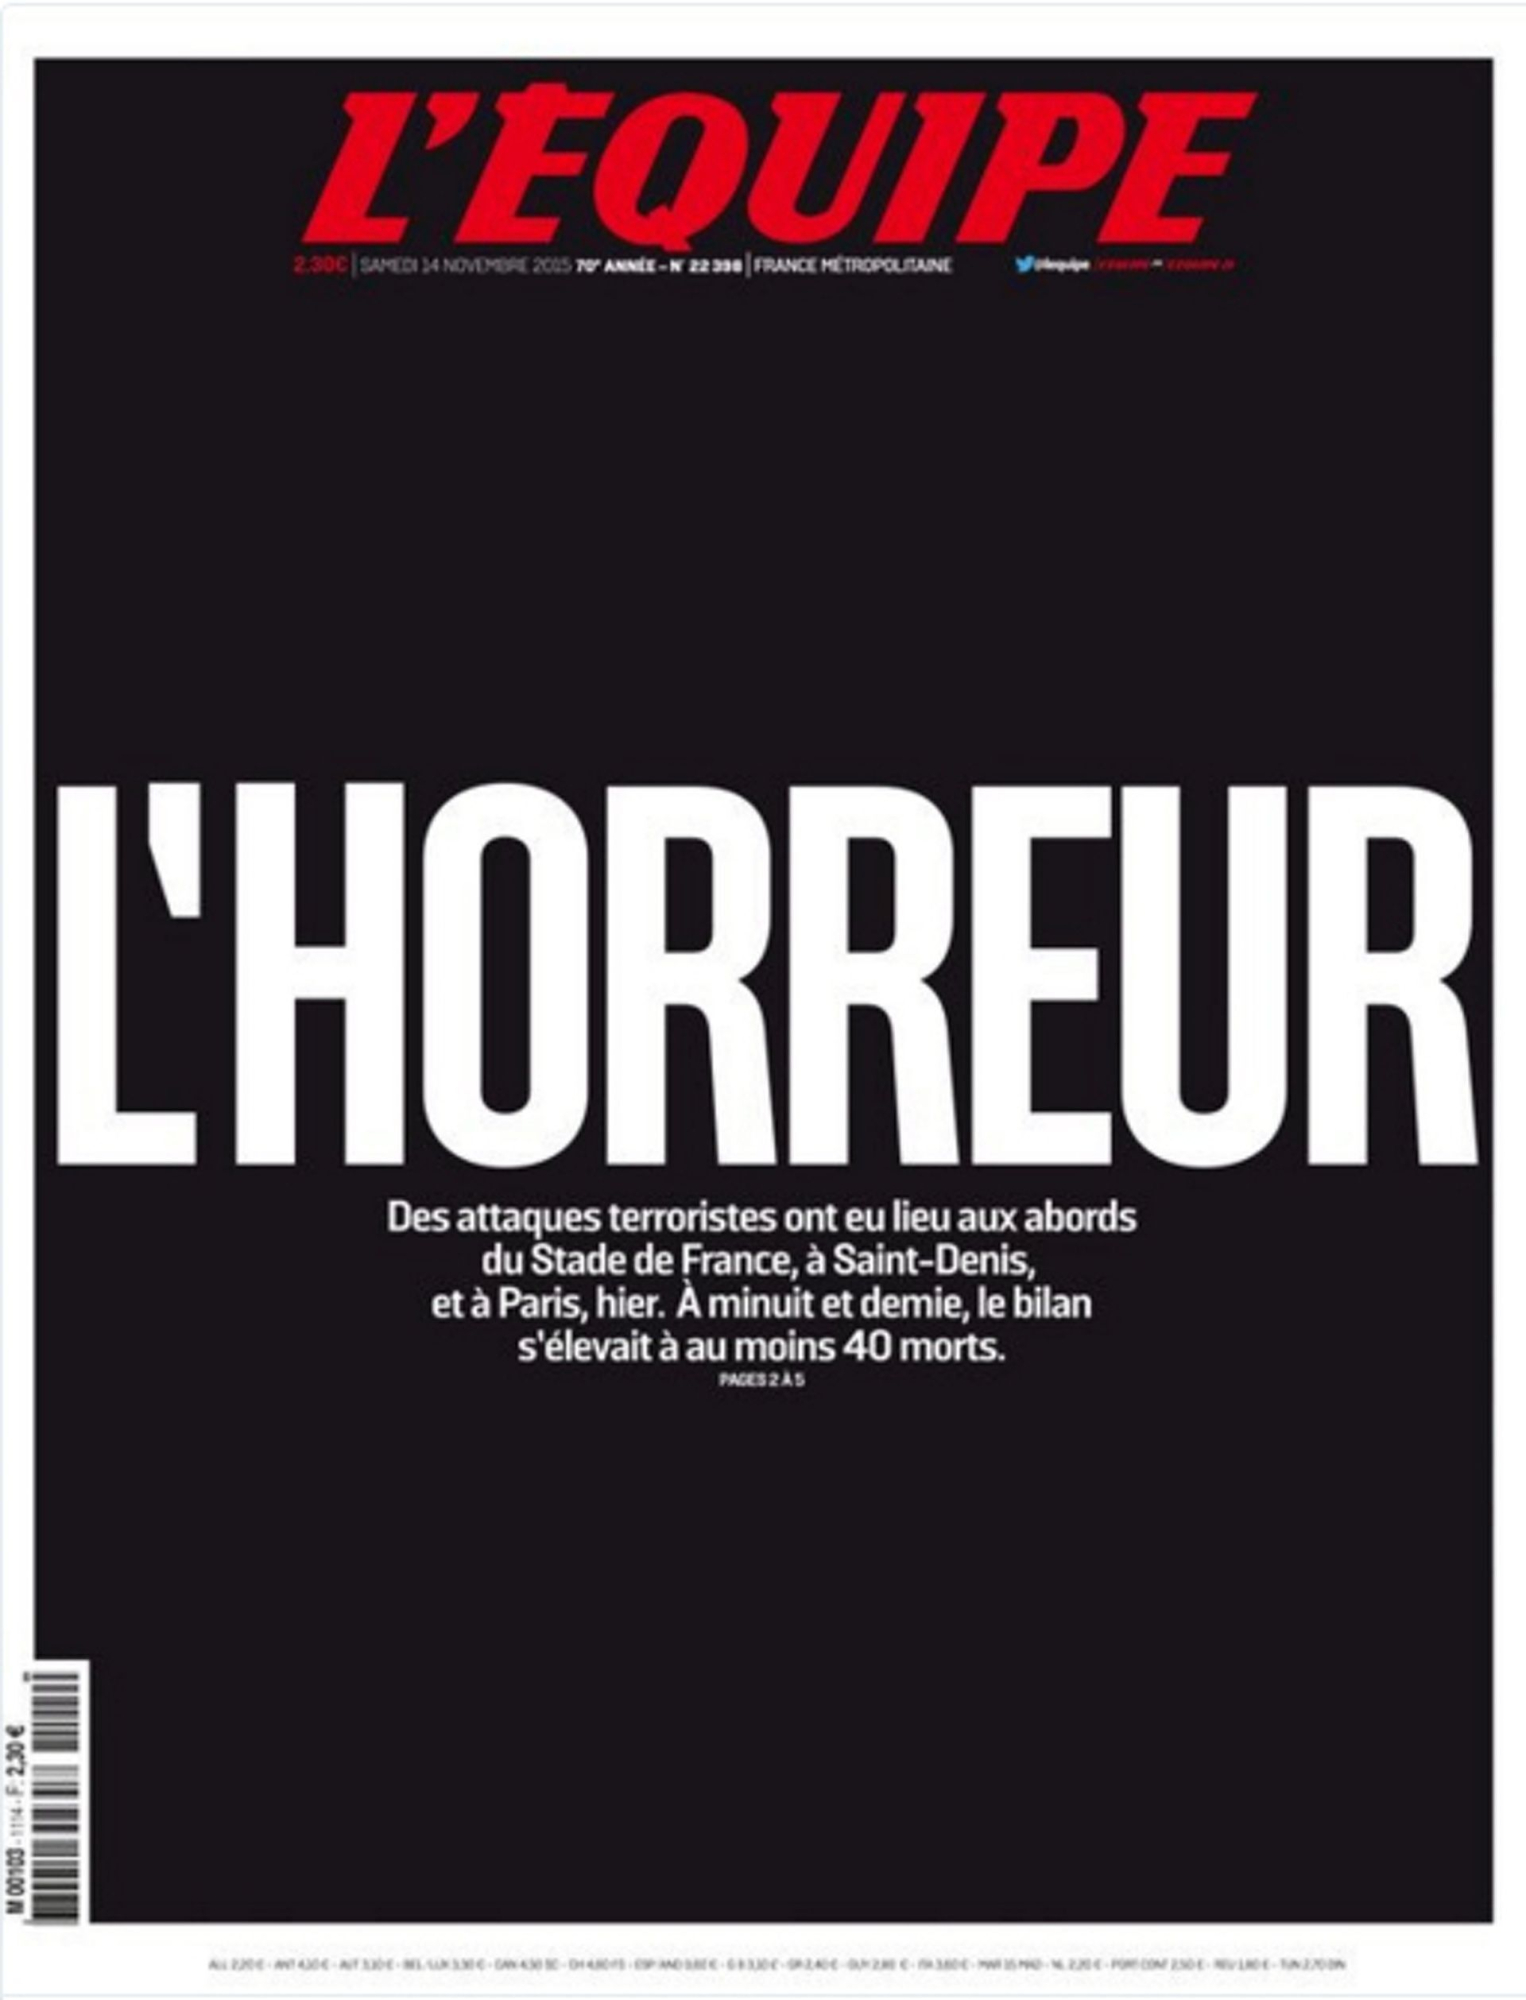 La sangre de París. El diario L'Equipe eligió el color negro sin foto para lanzar su dolor por los atentados sucedidos en París el 13 de noviembre de 2015. El titular de 'El horror' es suficiente.